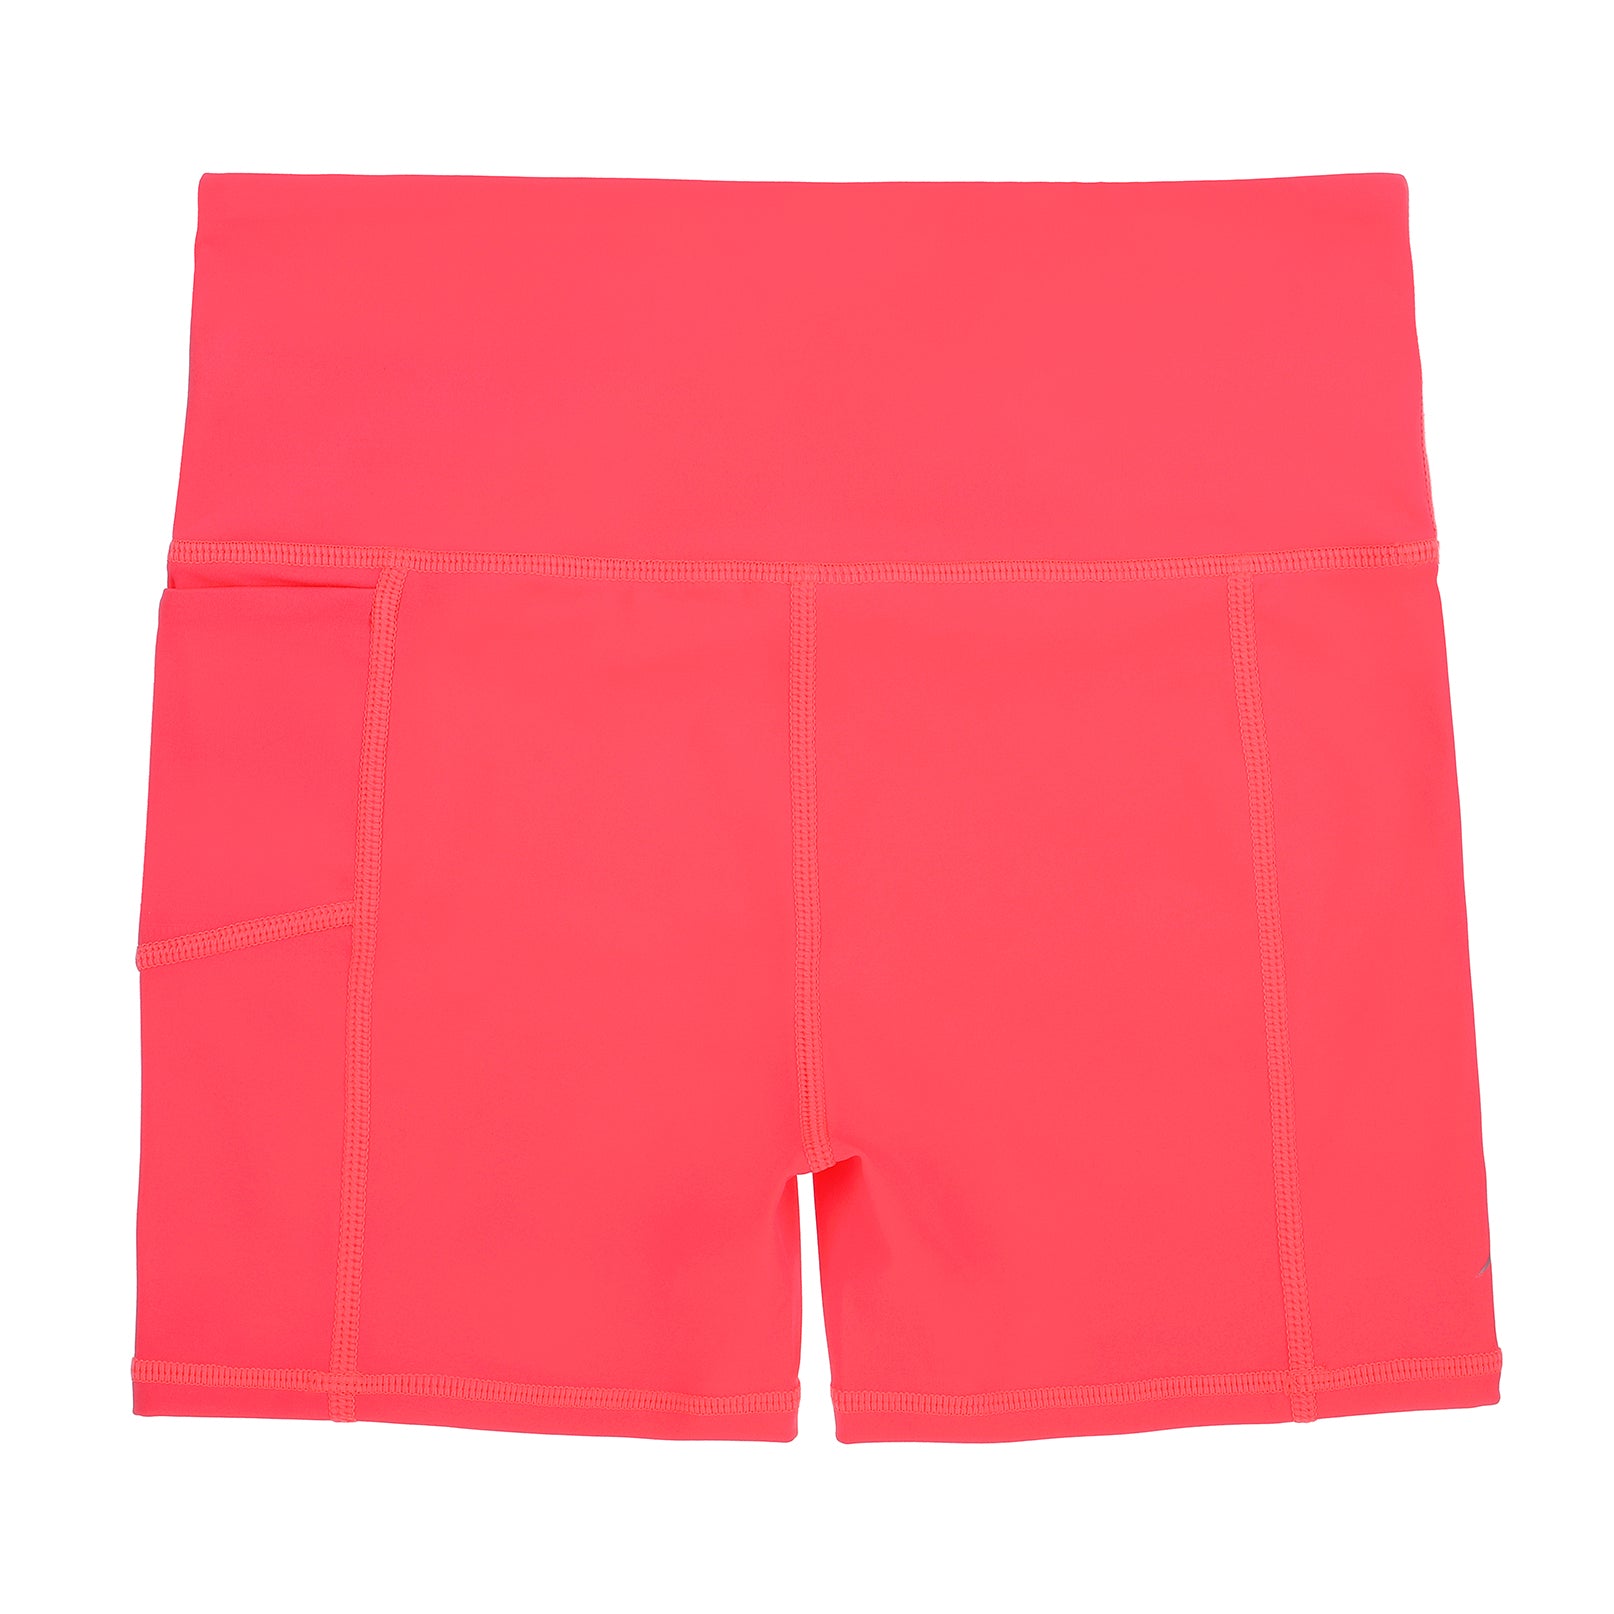 Women Ladies Gymnastic Cotton Neon Colour Plain Shorts Hot Pants Under Wear